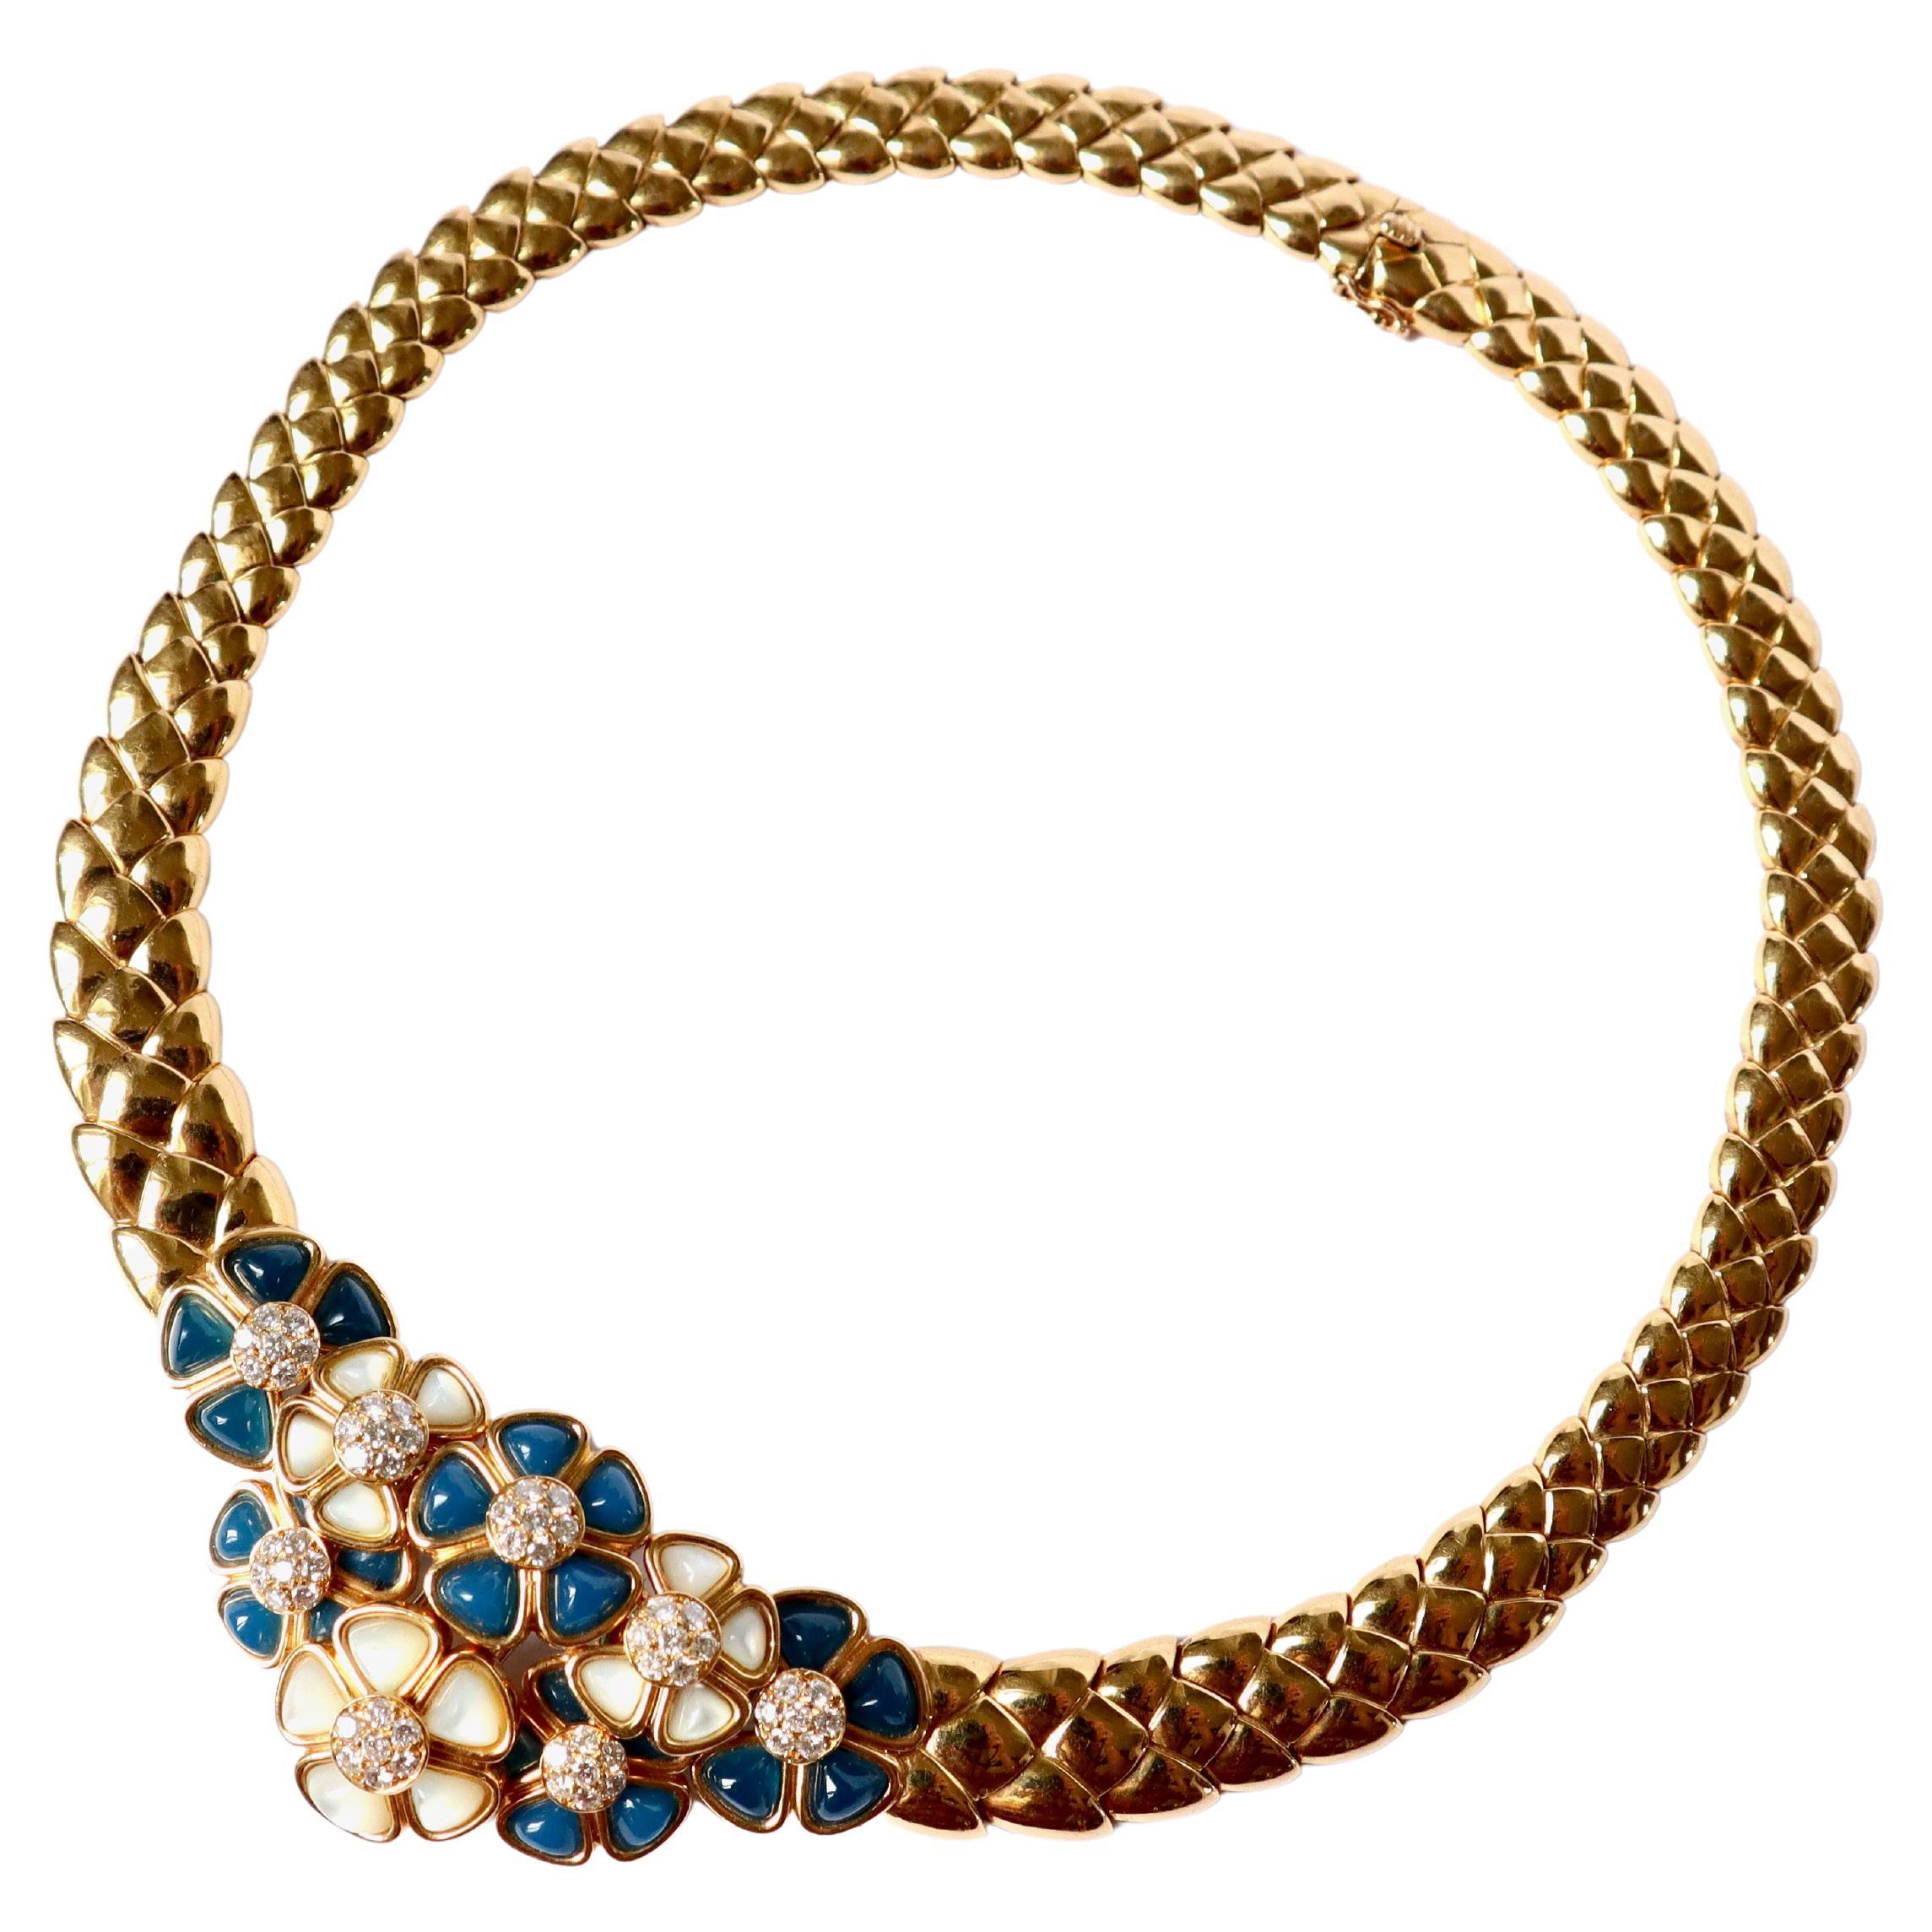 Van Cleef & Arpels Halskette aus 18 Karat Gelbgold, Chalcedon, Perlmutt und Diamanten, die sich in eine Brosche verwandeln lässt. 
Das zentrale Muster ist abnehmbar und wird zu einer Brosche. An der Halskette befinden sich noch zwei Blumen aus